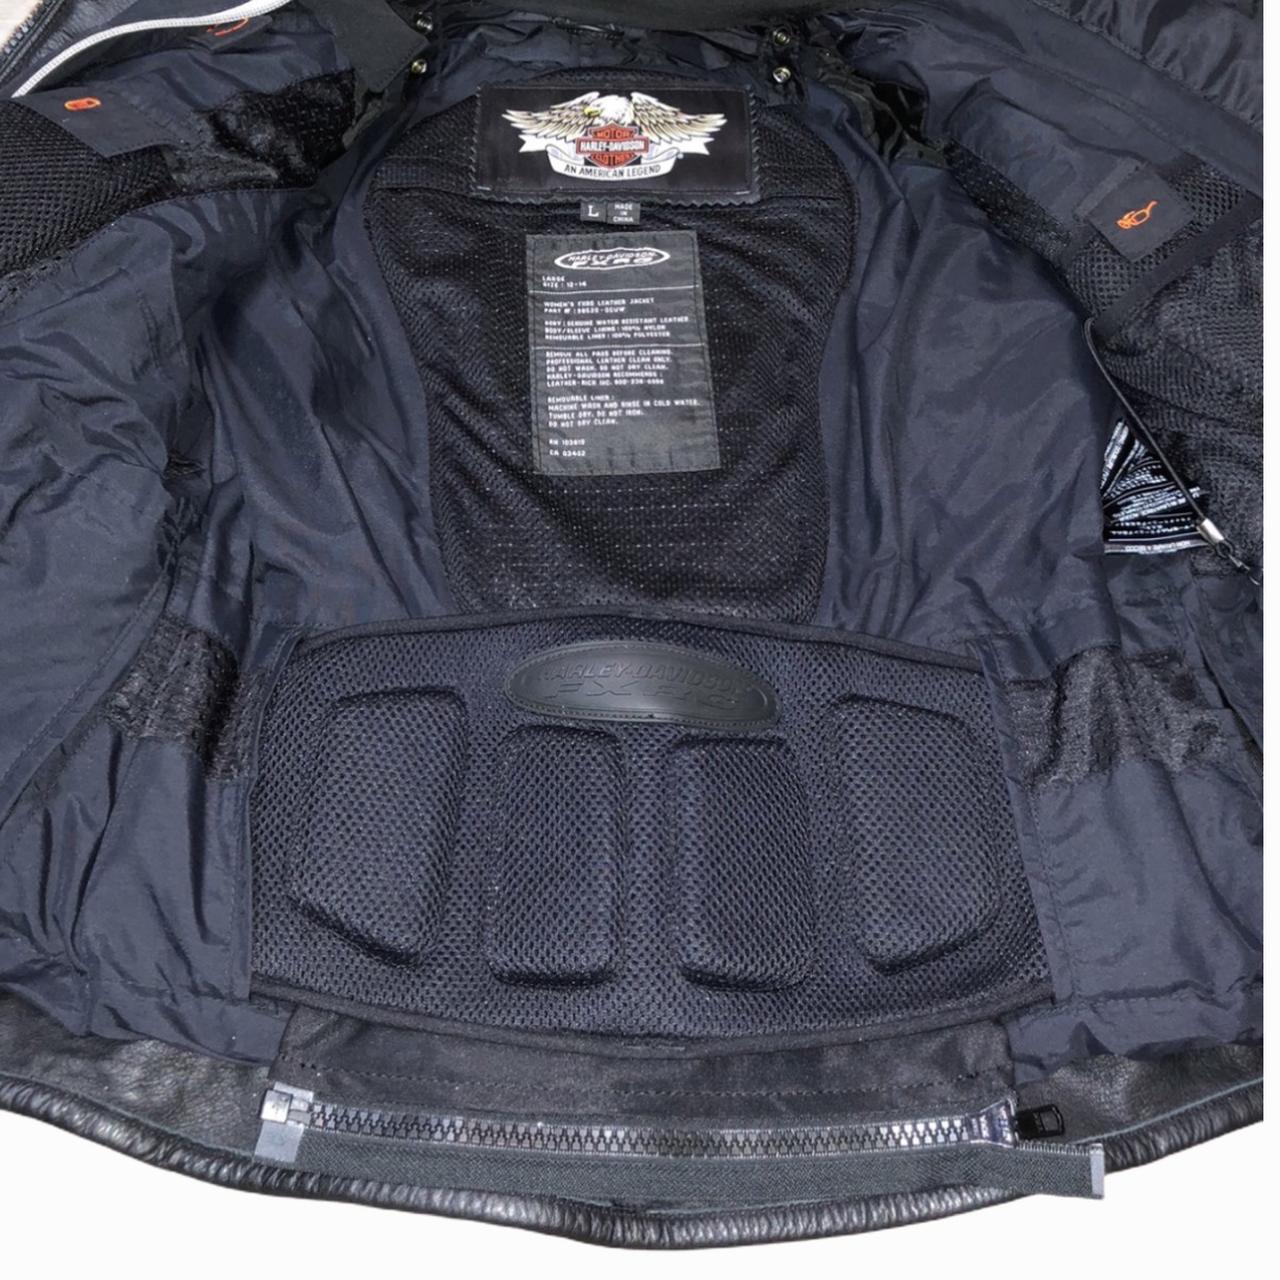 SOLD Harley Davidson FXRG Leather Jacket